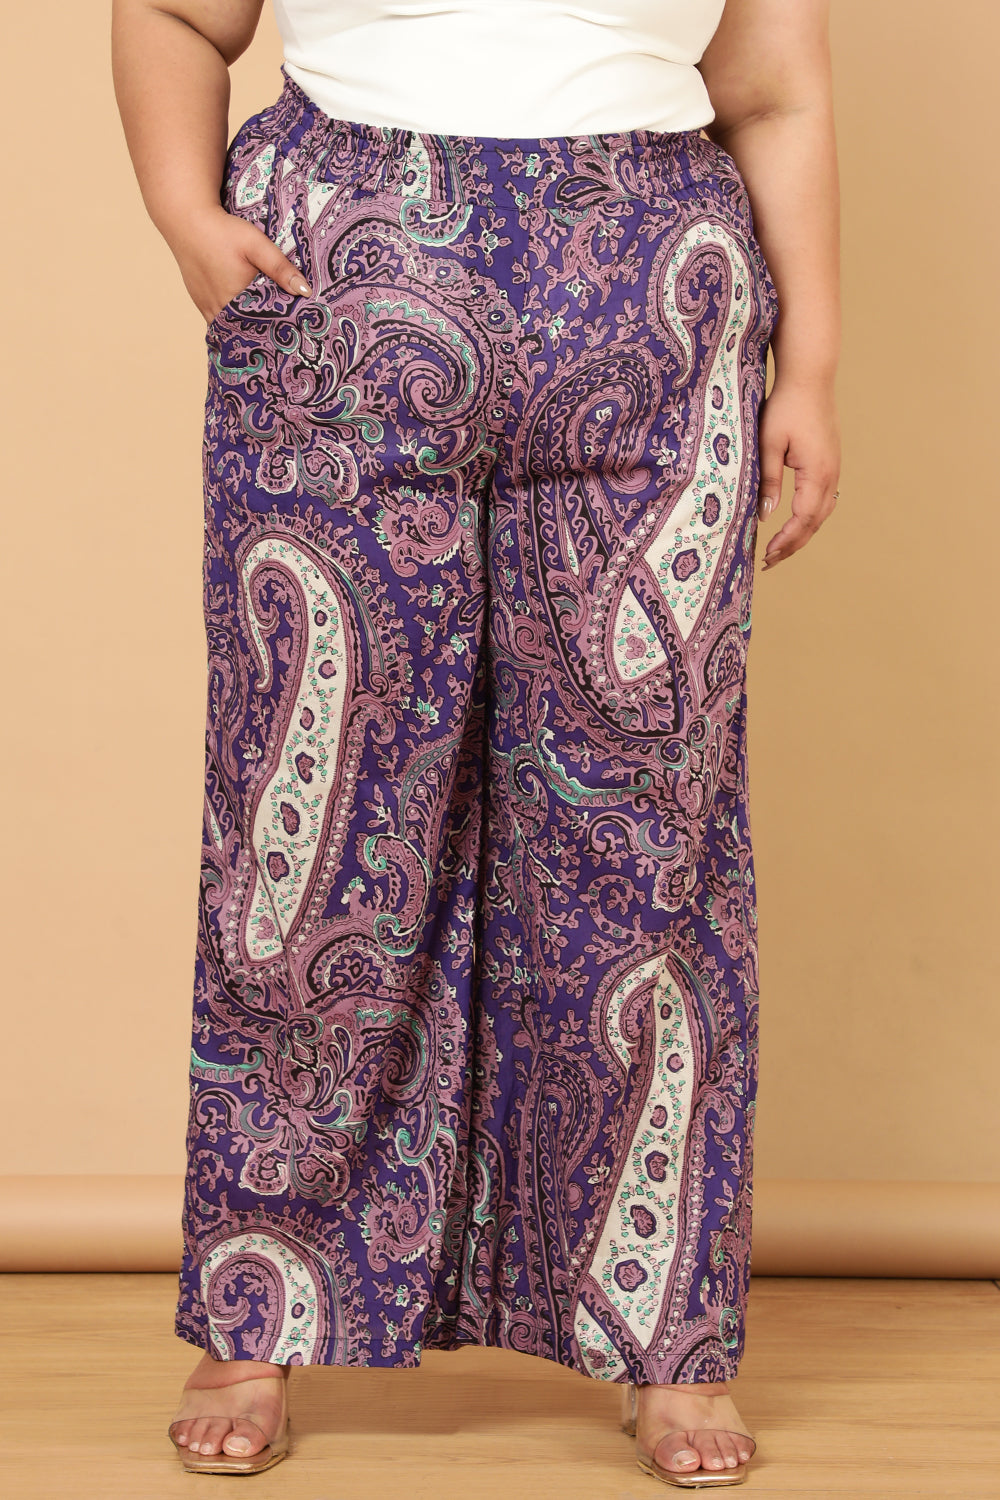 Plus Size Plus Size Purple Paisley Print Cotton High Waist Pants